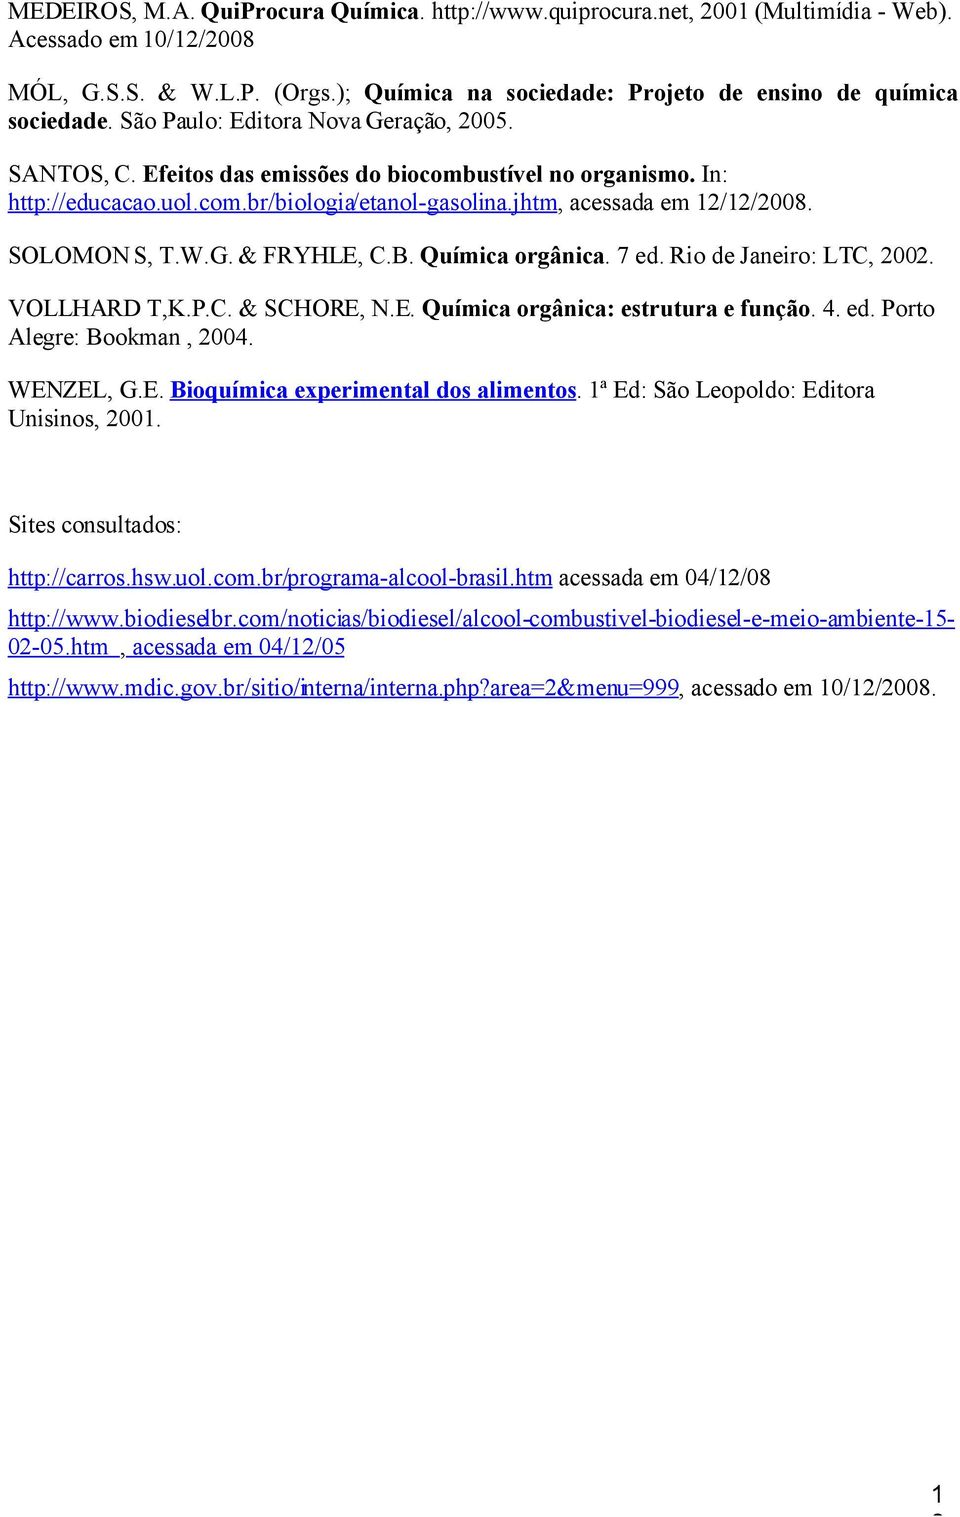 jhtm, acessada em 12/12/2008. SOLOMON S, T.W.G. & FRYHLE, C.B. Química orgânica. 7 ed. Rio de Janeiro: LTC, 2002. VOLLHARD T,K.P.C. & SCHORE, N.E. Química orgânica: estrutura e função. 4. ed. Porto Alegre: Bookman, 2004.